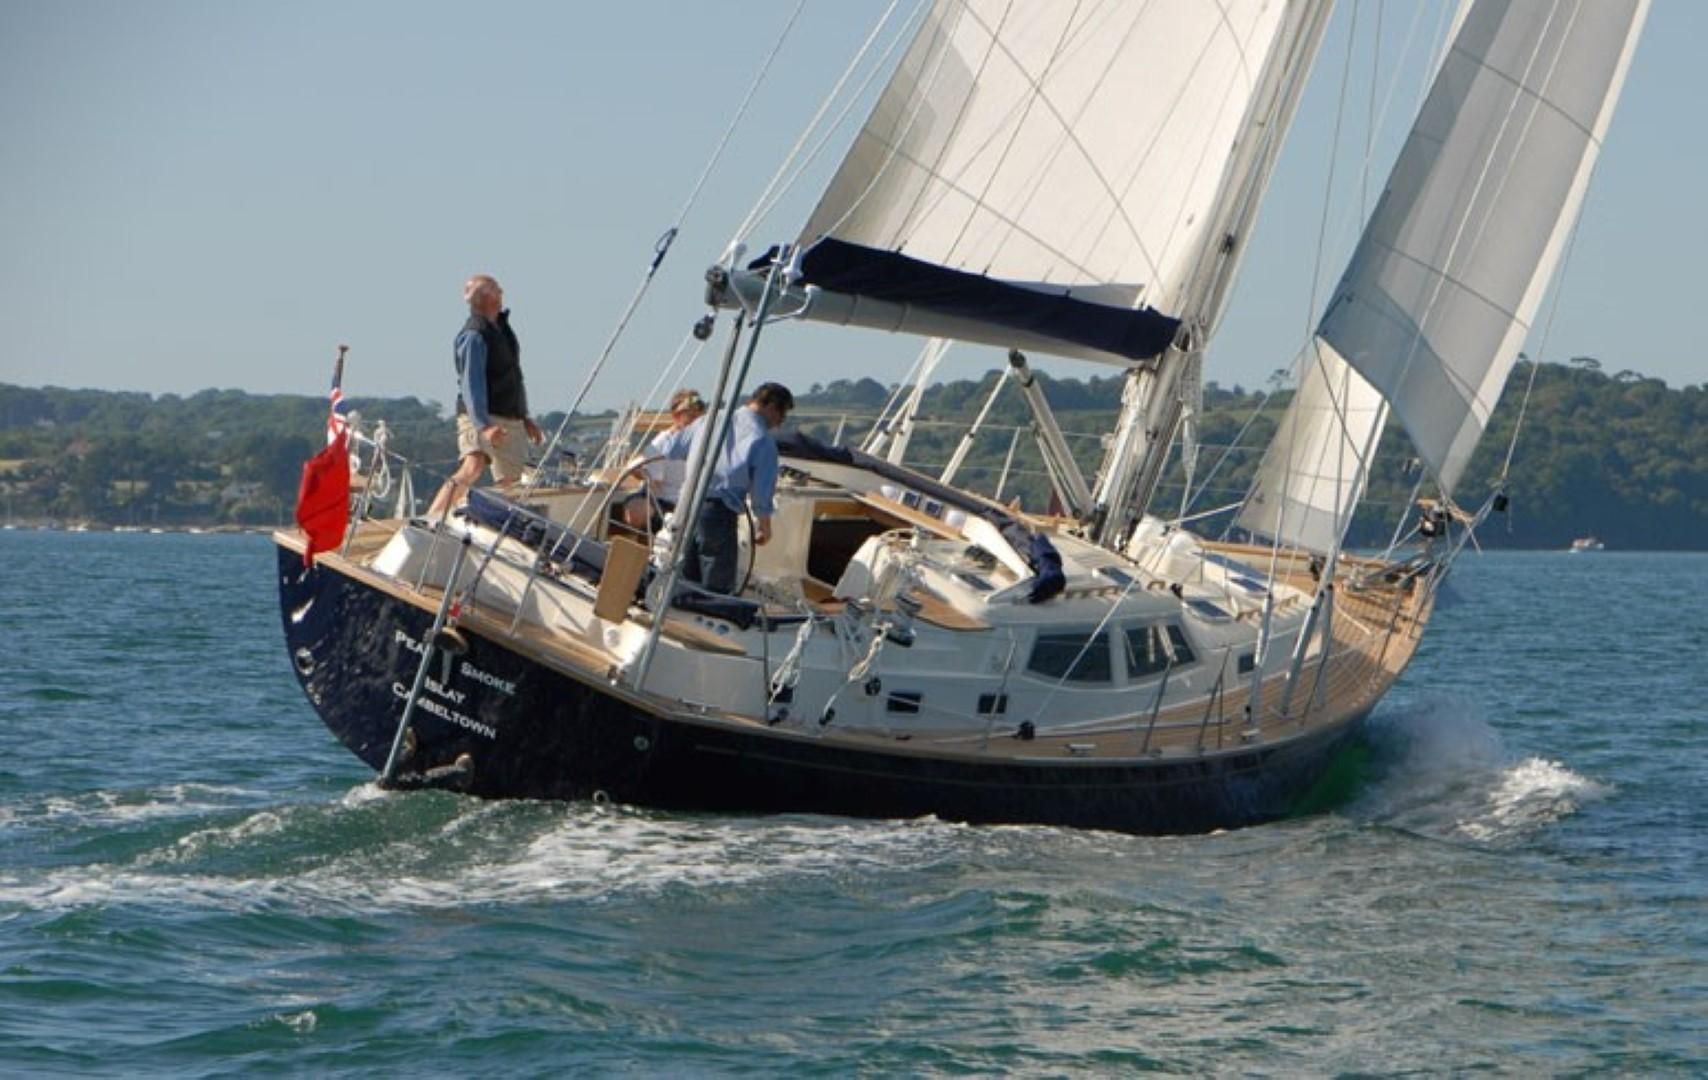 rustler 44 yacht review